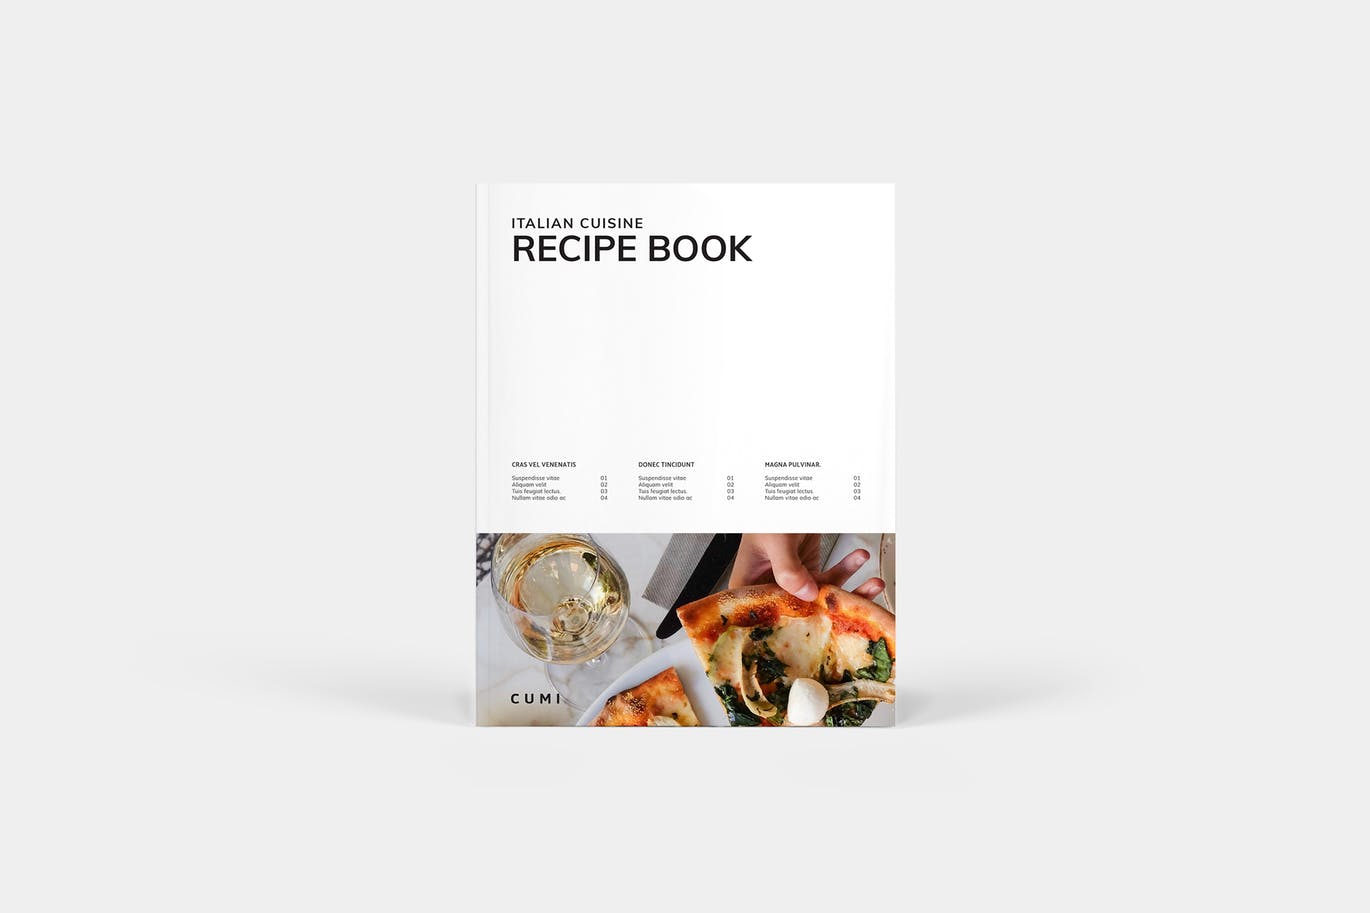 菜谱菜单图书/美食杂志版式设计模板 Cookbook插图